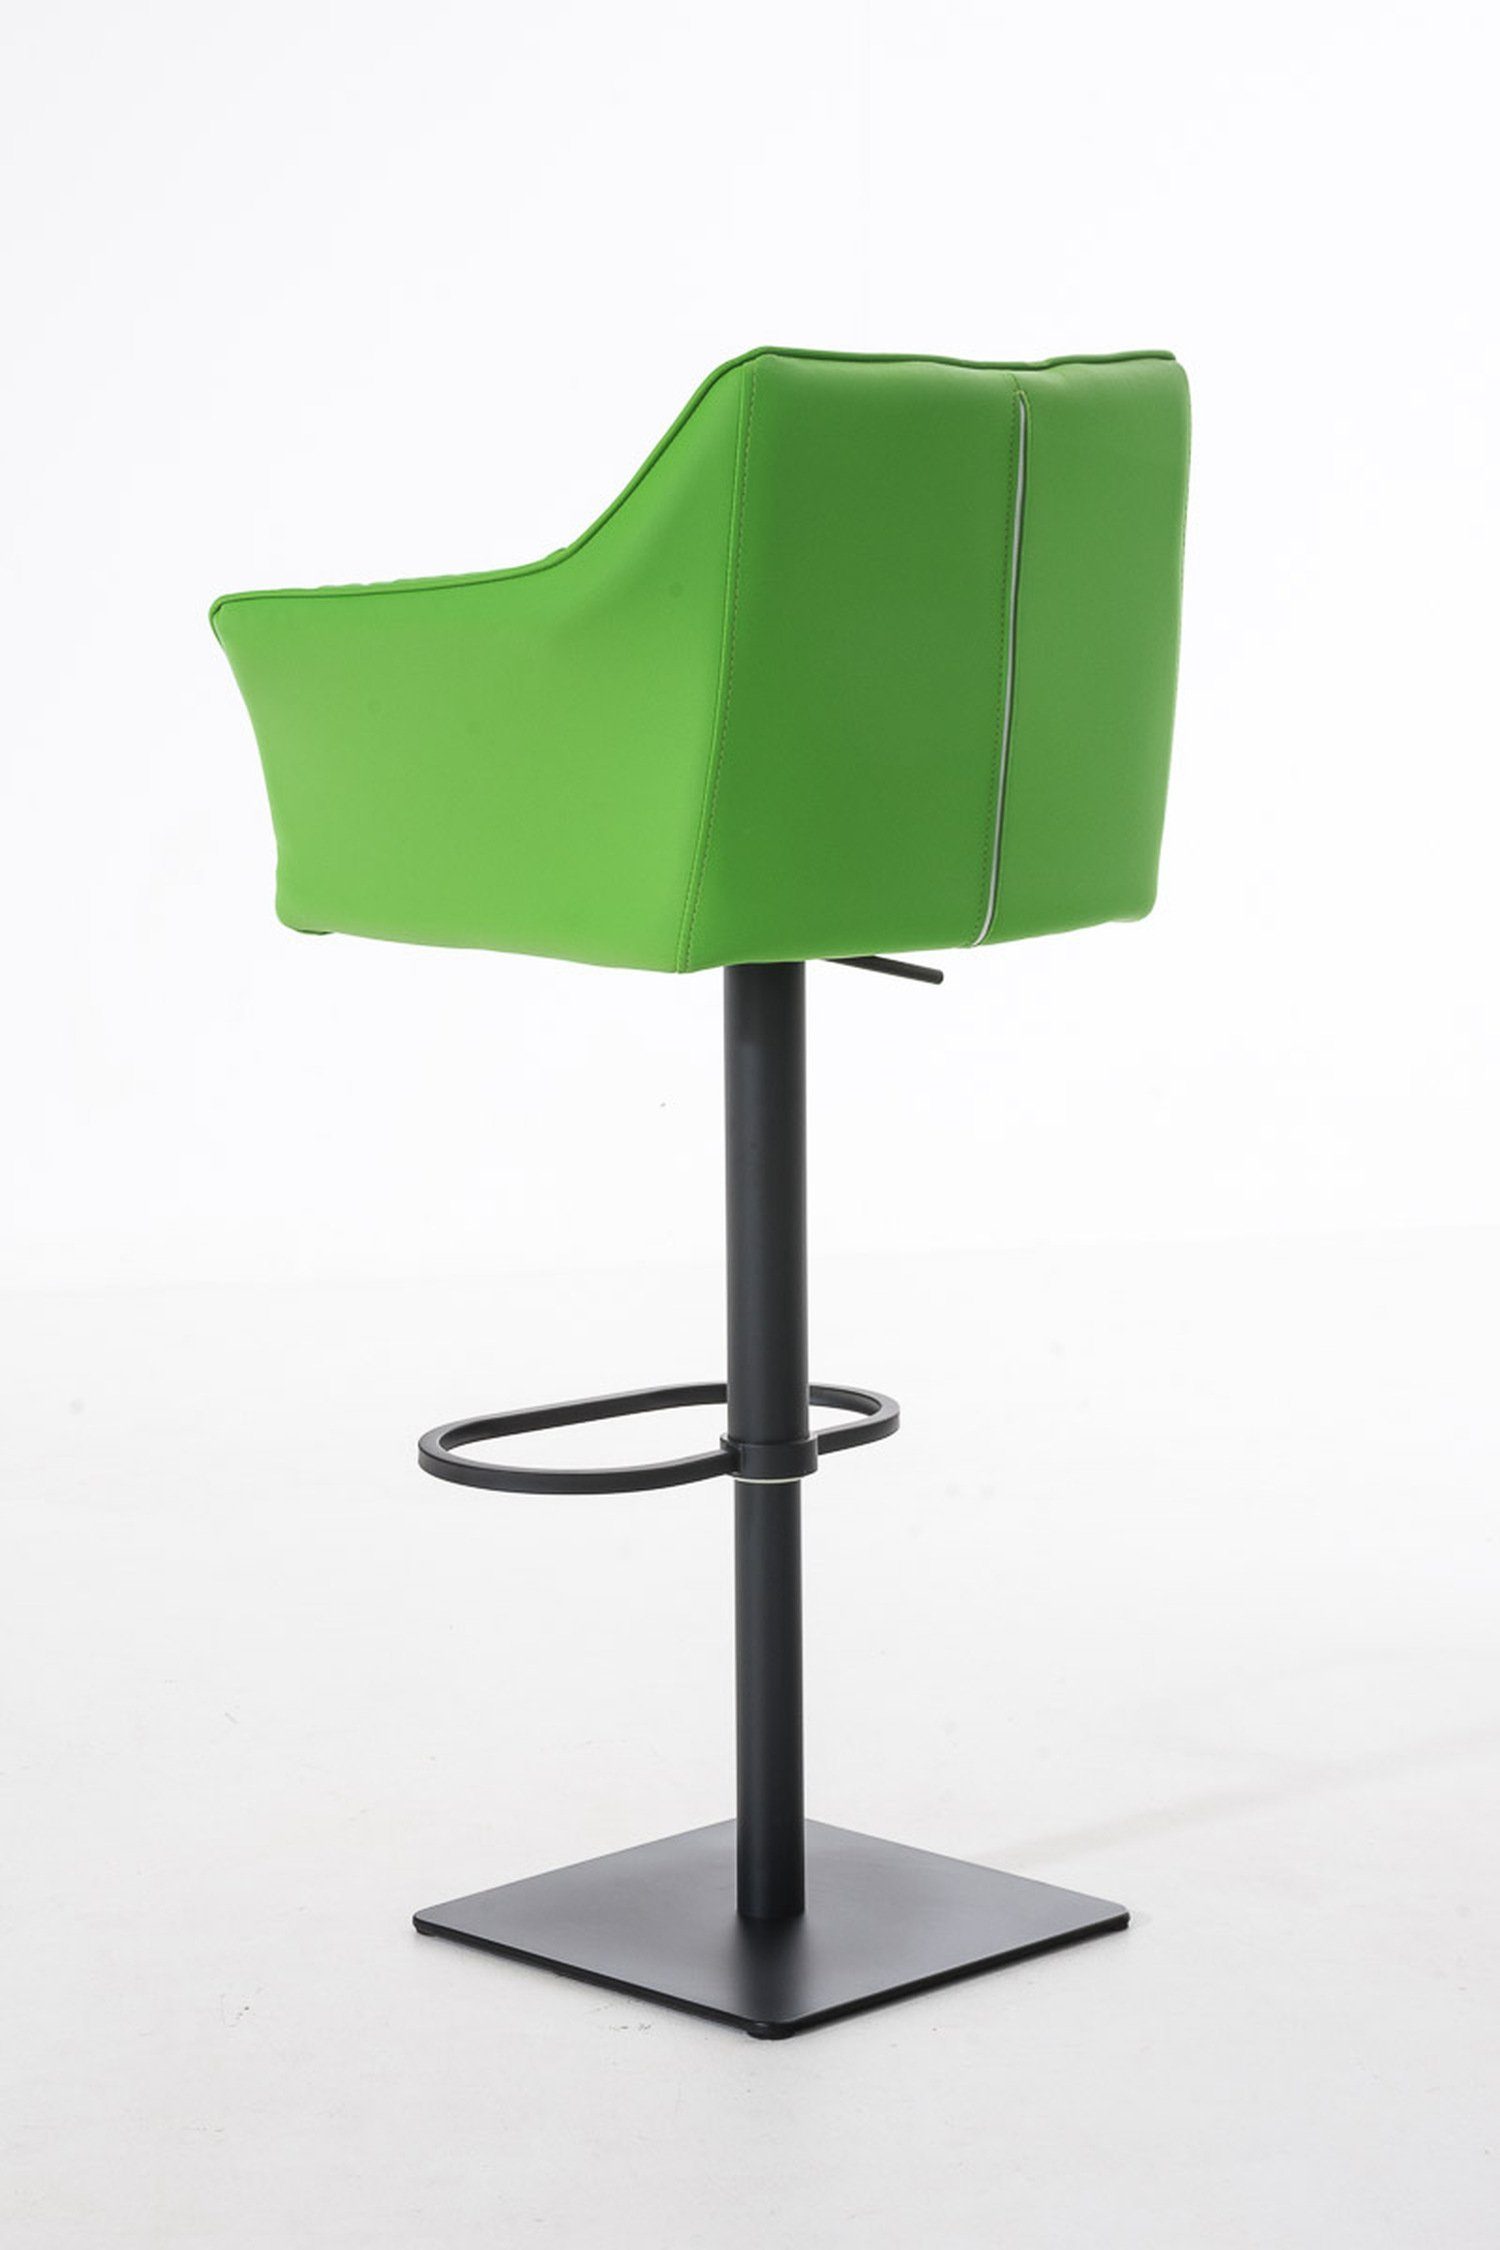 & matt Hocker (mit Metall TPFLiving Rückenlehne und 360° - Barhocker für - Kunstleder Fußstütze Küche), Sitzfläche: drehbar - Grün Damaso schwarz Theke